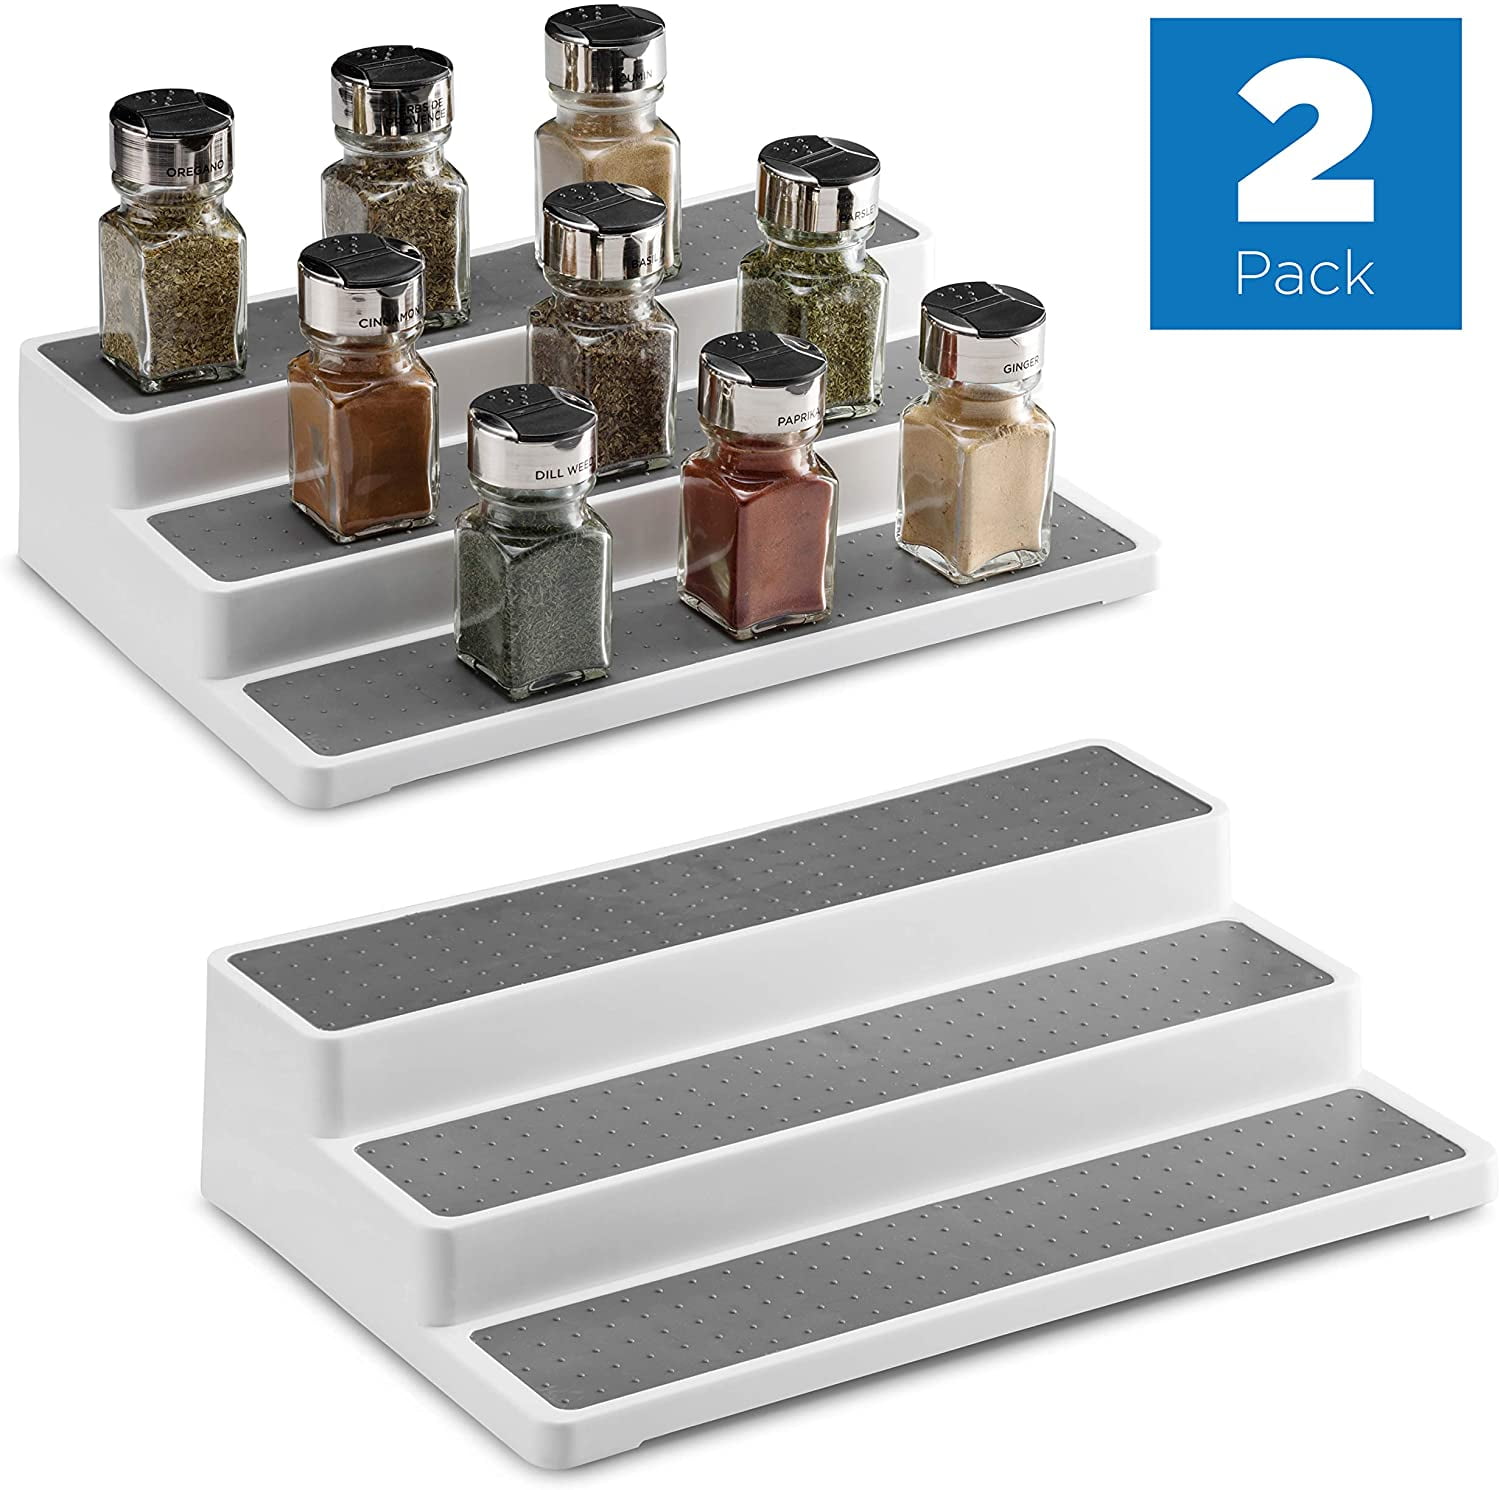 2 Pack 3-Tier Spice Rack Pantry Kitchen Cabinet Organizer Non Skid Shelf Kitchen Organizer for Countertop